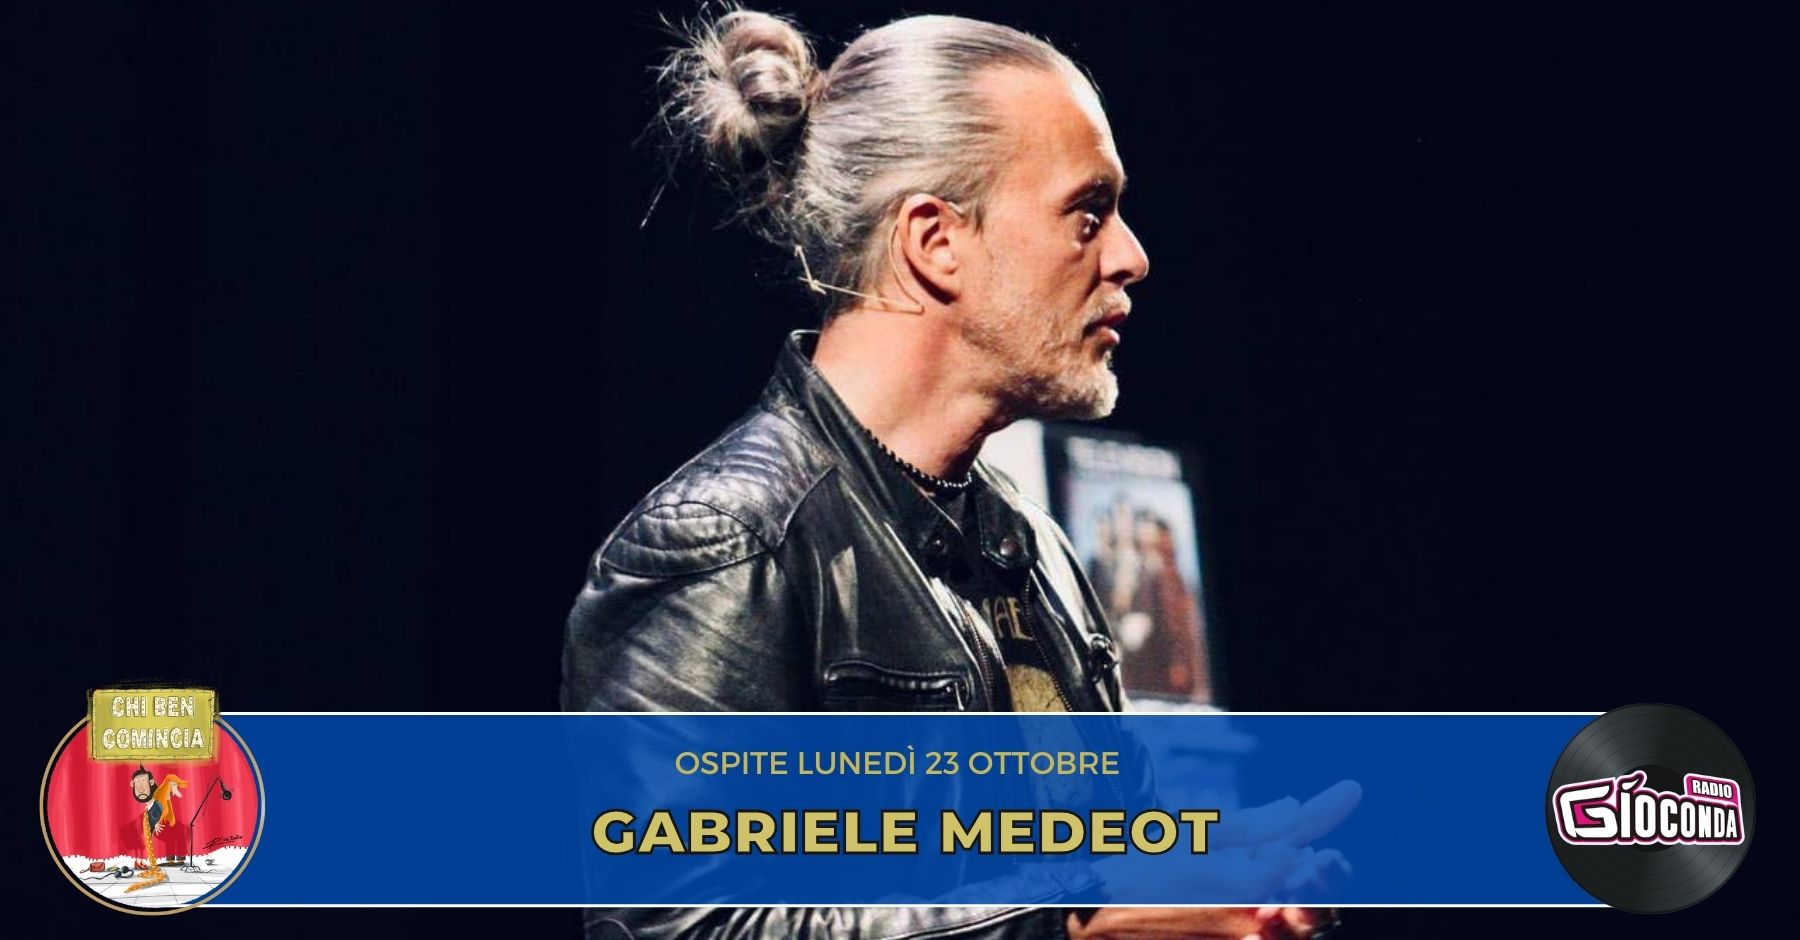 Il musicista e storyteller Gabriele Medeot è l’ospite della nuova puntata di “Chi ben comincia” in onda lunedì 23 ottobre alle 18.00.